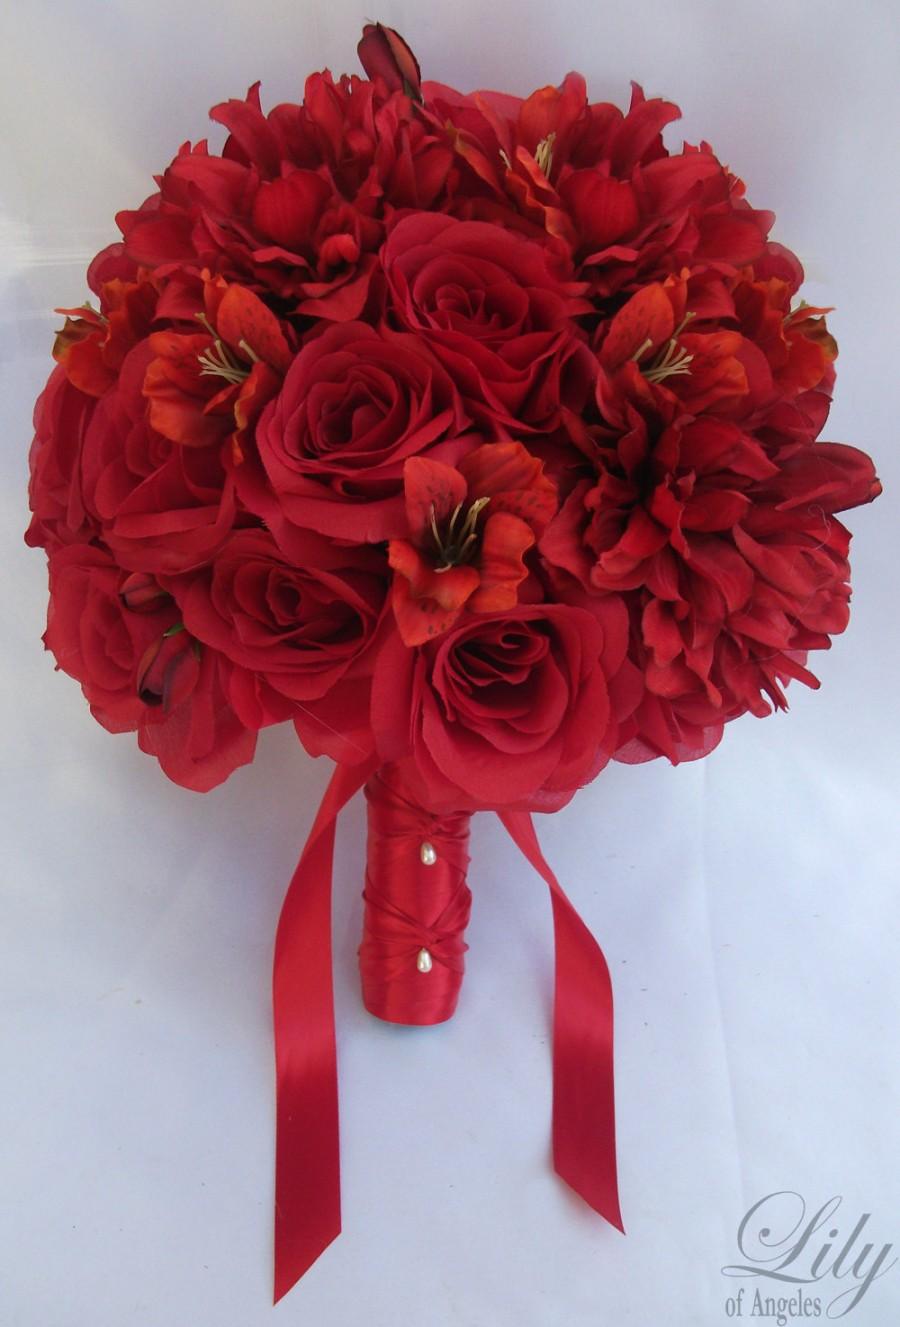 زفاف - 17 Piece Package Wedding Bridal Bride Maid Of Honor Bridesmaid Bouquet Boutonniere Corsage Silk Flower APPLE RED "Lily of Angeles" RERE03